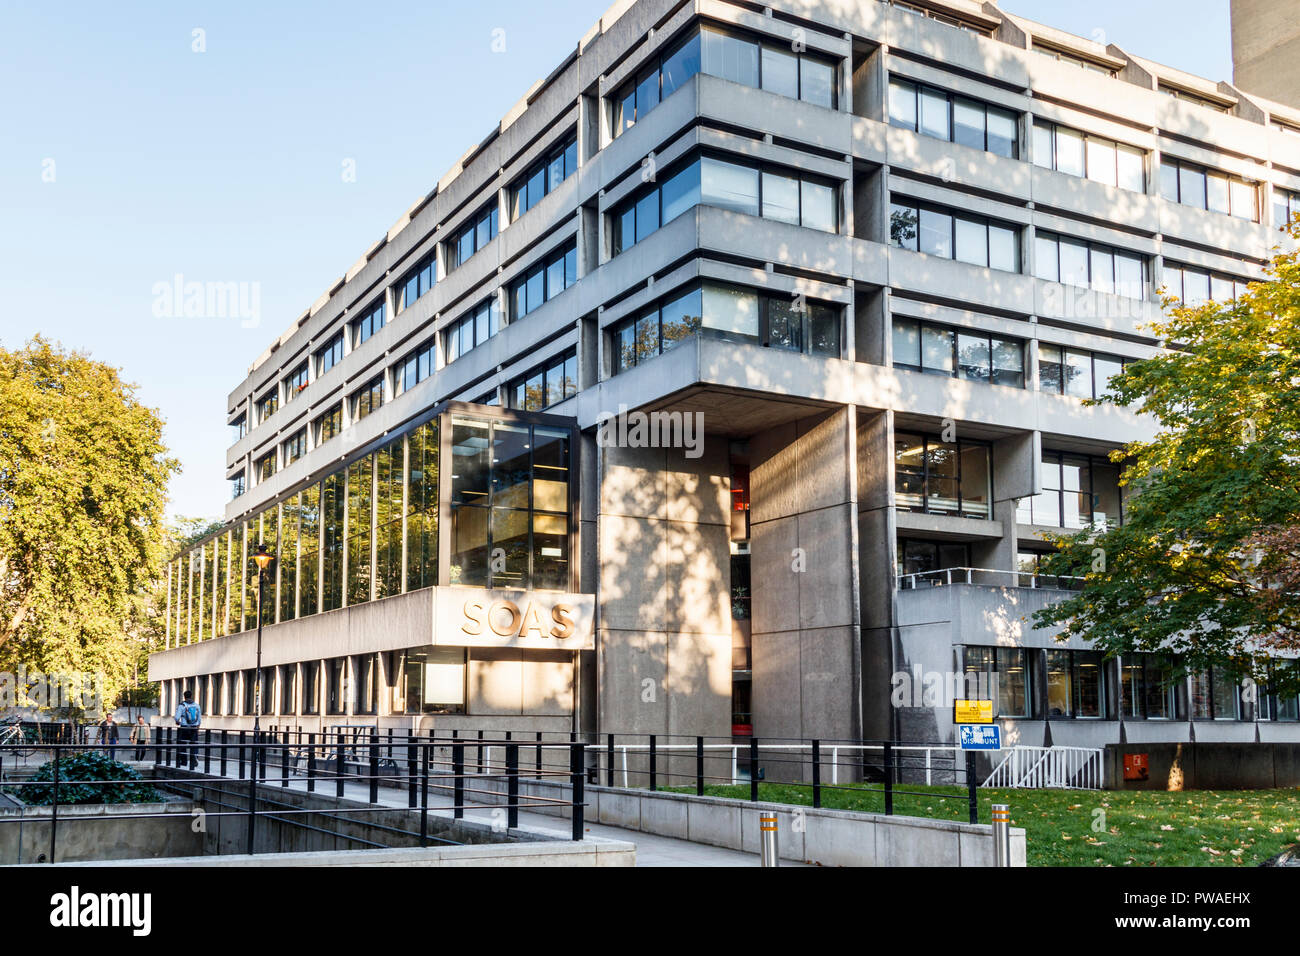 Oss (l'École des études orientales et africaines, Université de Londres), de Woburn Square, London, UK Banque D'Images